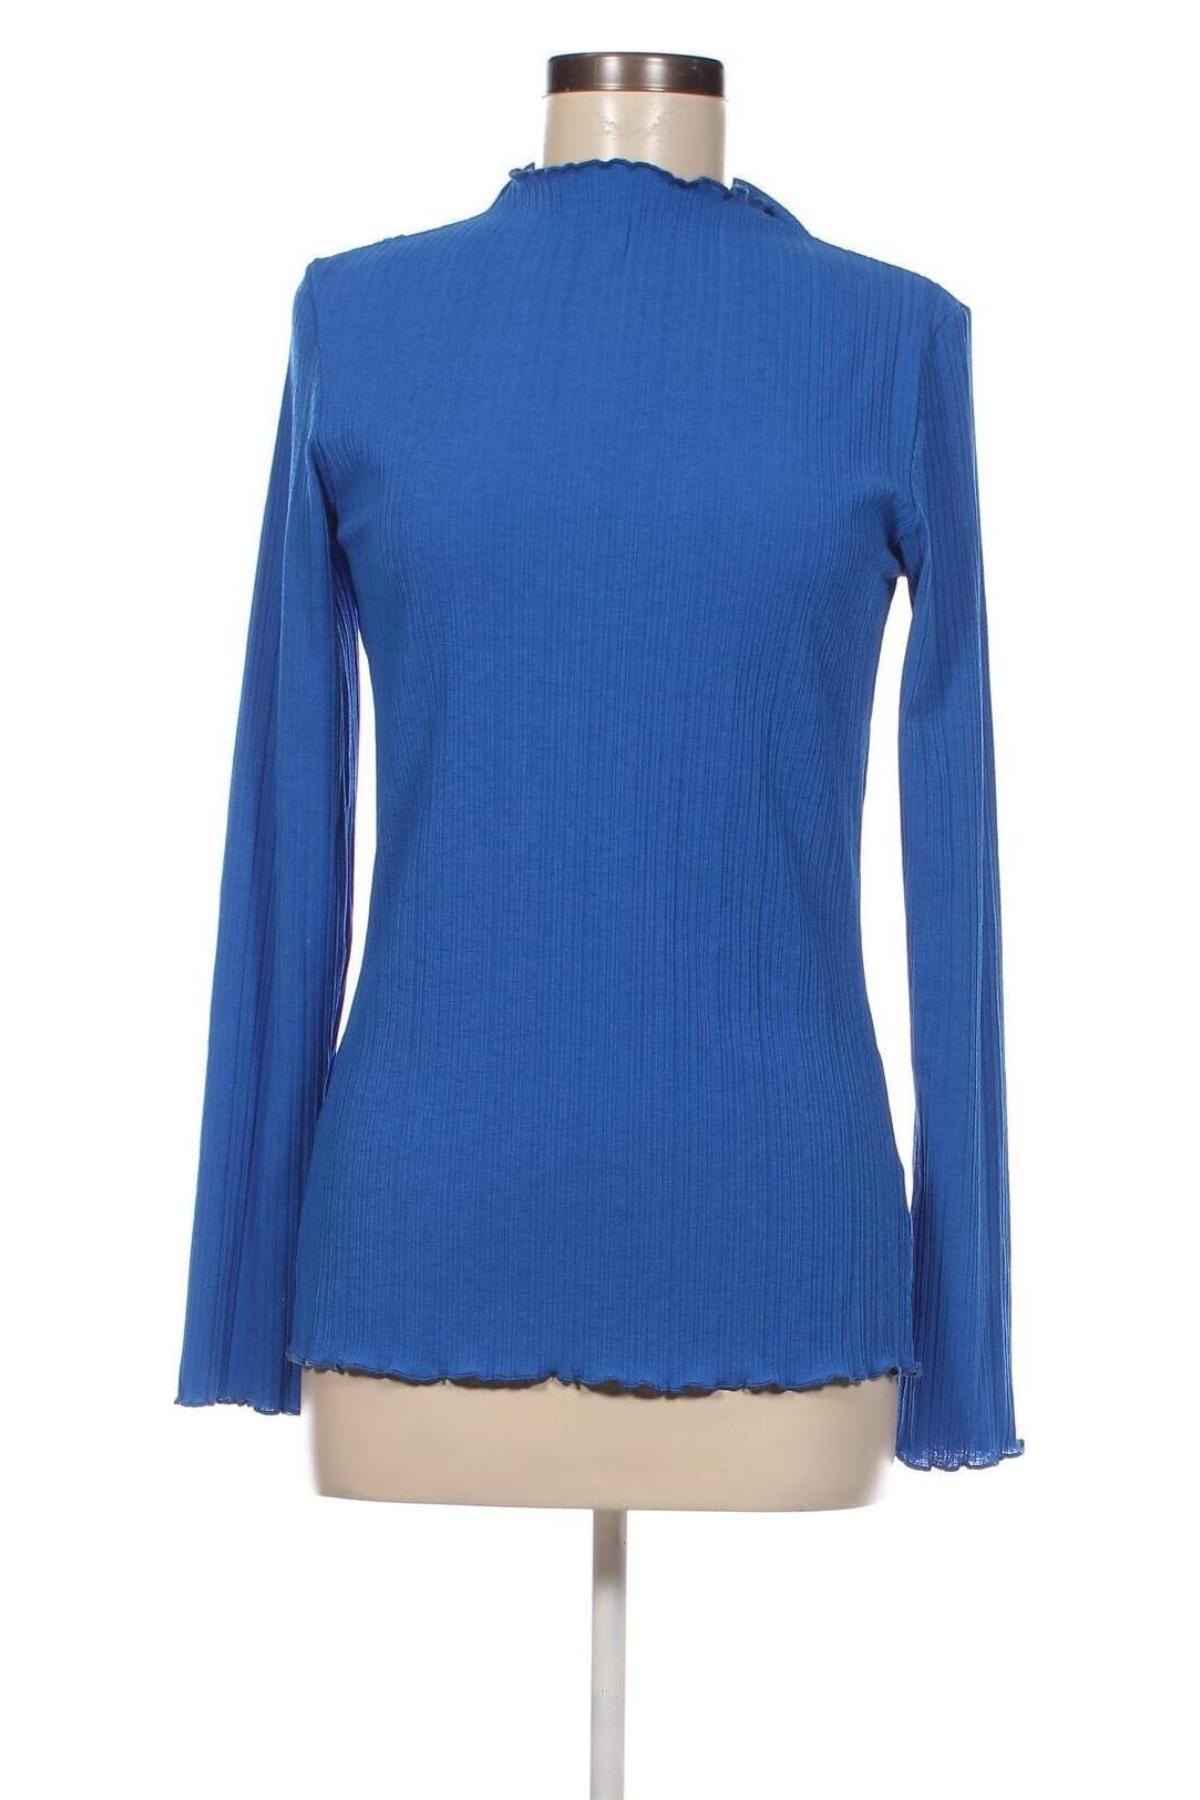 Γυναικεία μπλούζα Modstrom, Μέγεθος L, Χρώμα Μπλέ, Τιμή 4,73 €